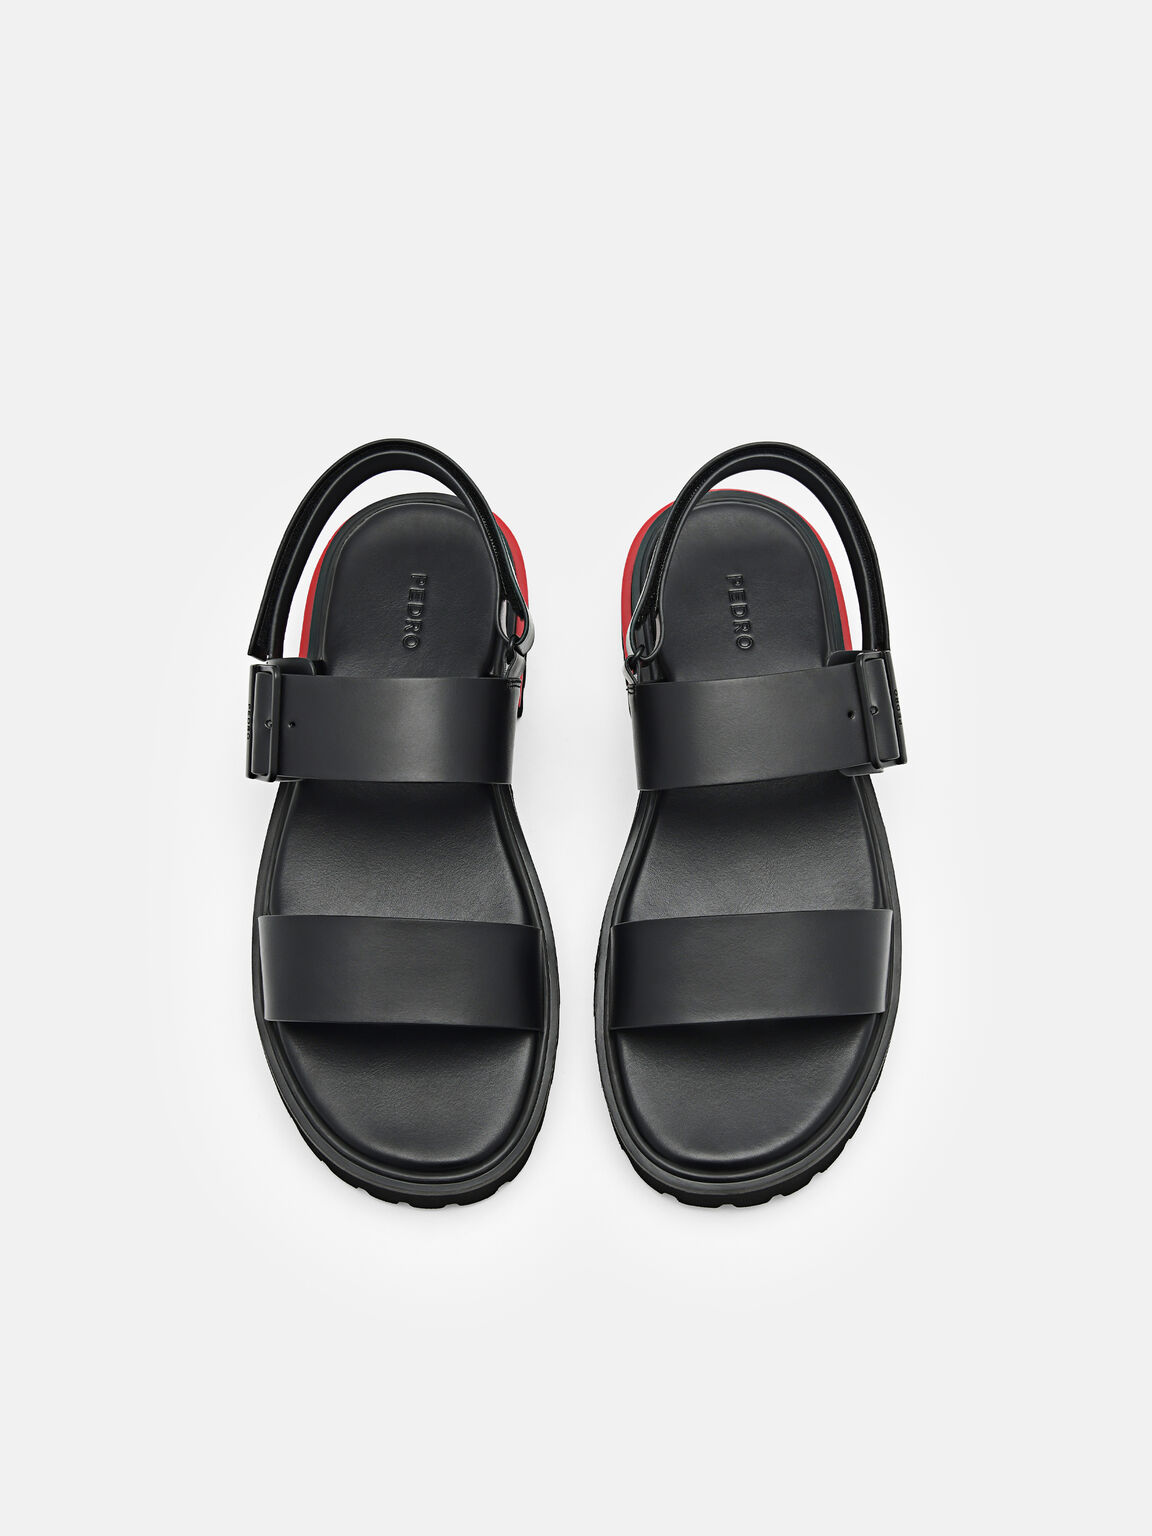 Cooper Backstrap Sandals, Black, hi-res